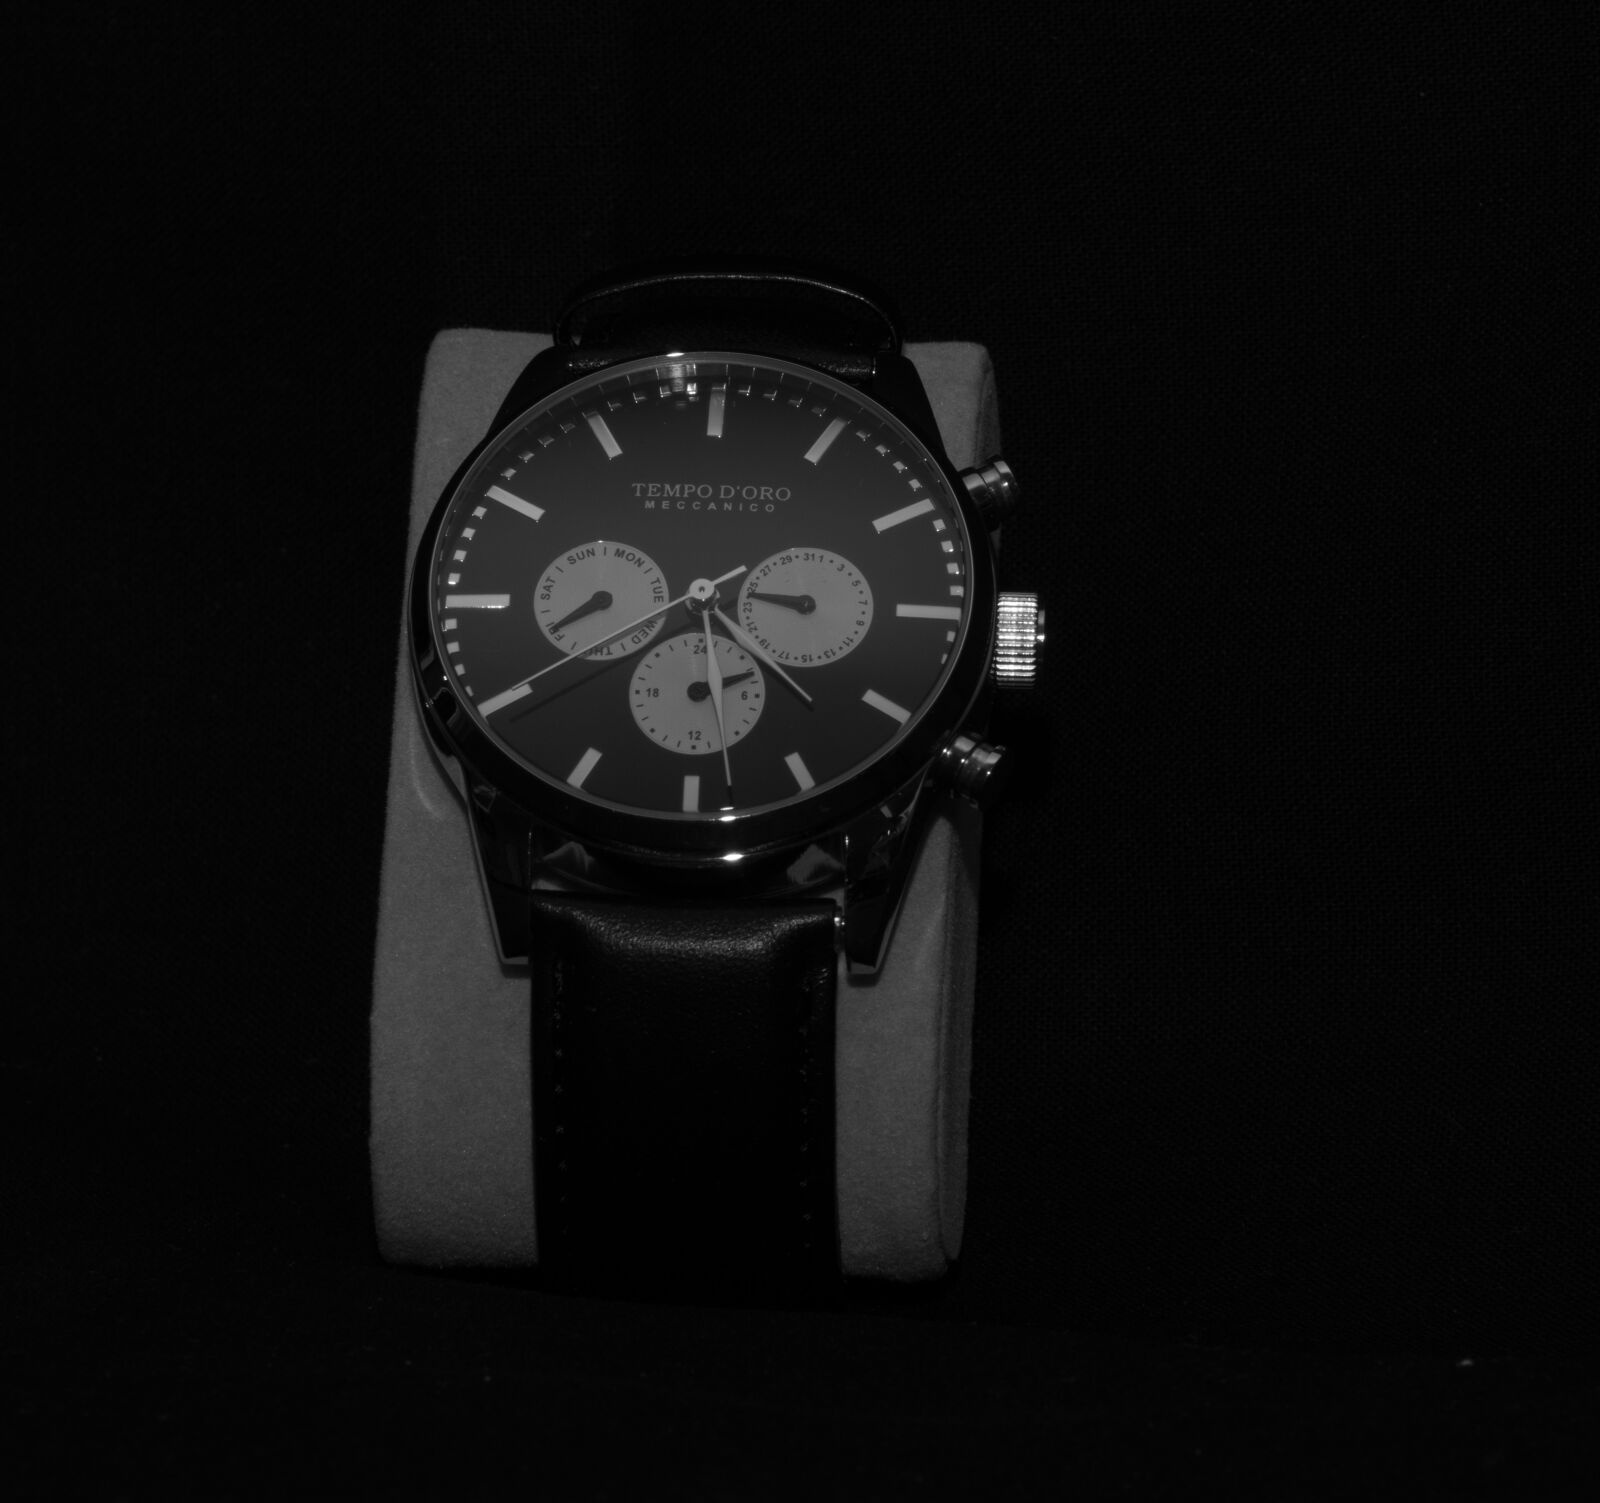 Pentax K-3 + Tamron SP AF 70-200mm F2.8 Di LD (IF) MACRO sample photo. Clock, dial, time photography